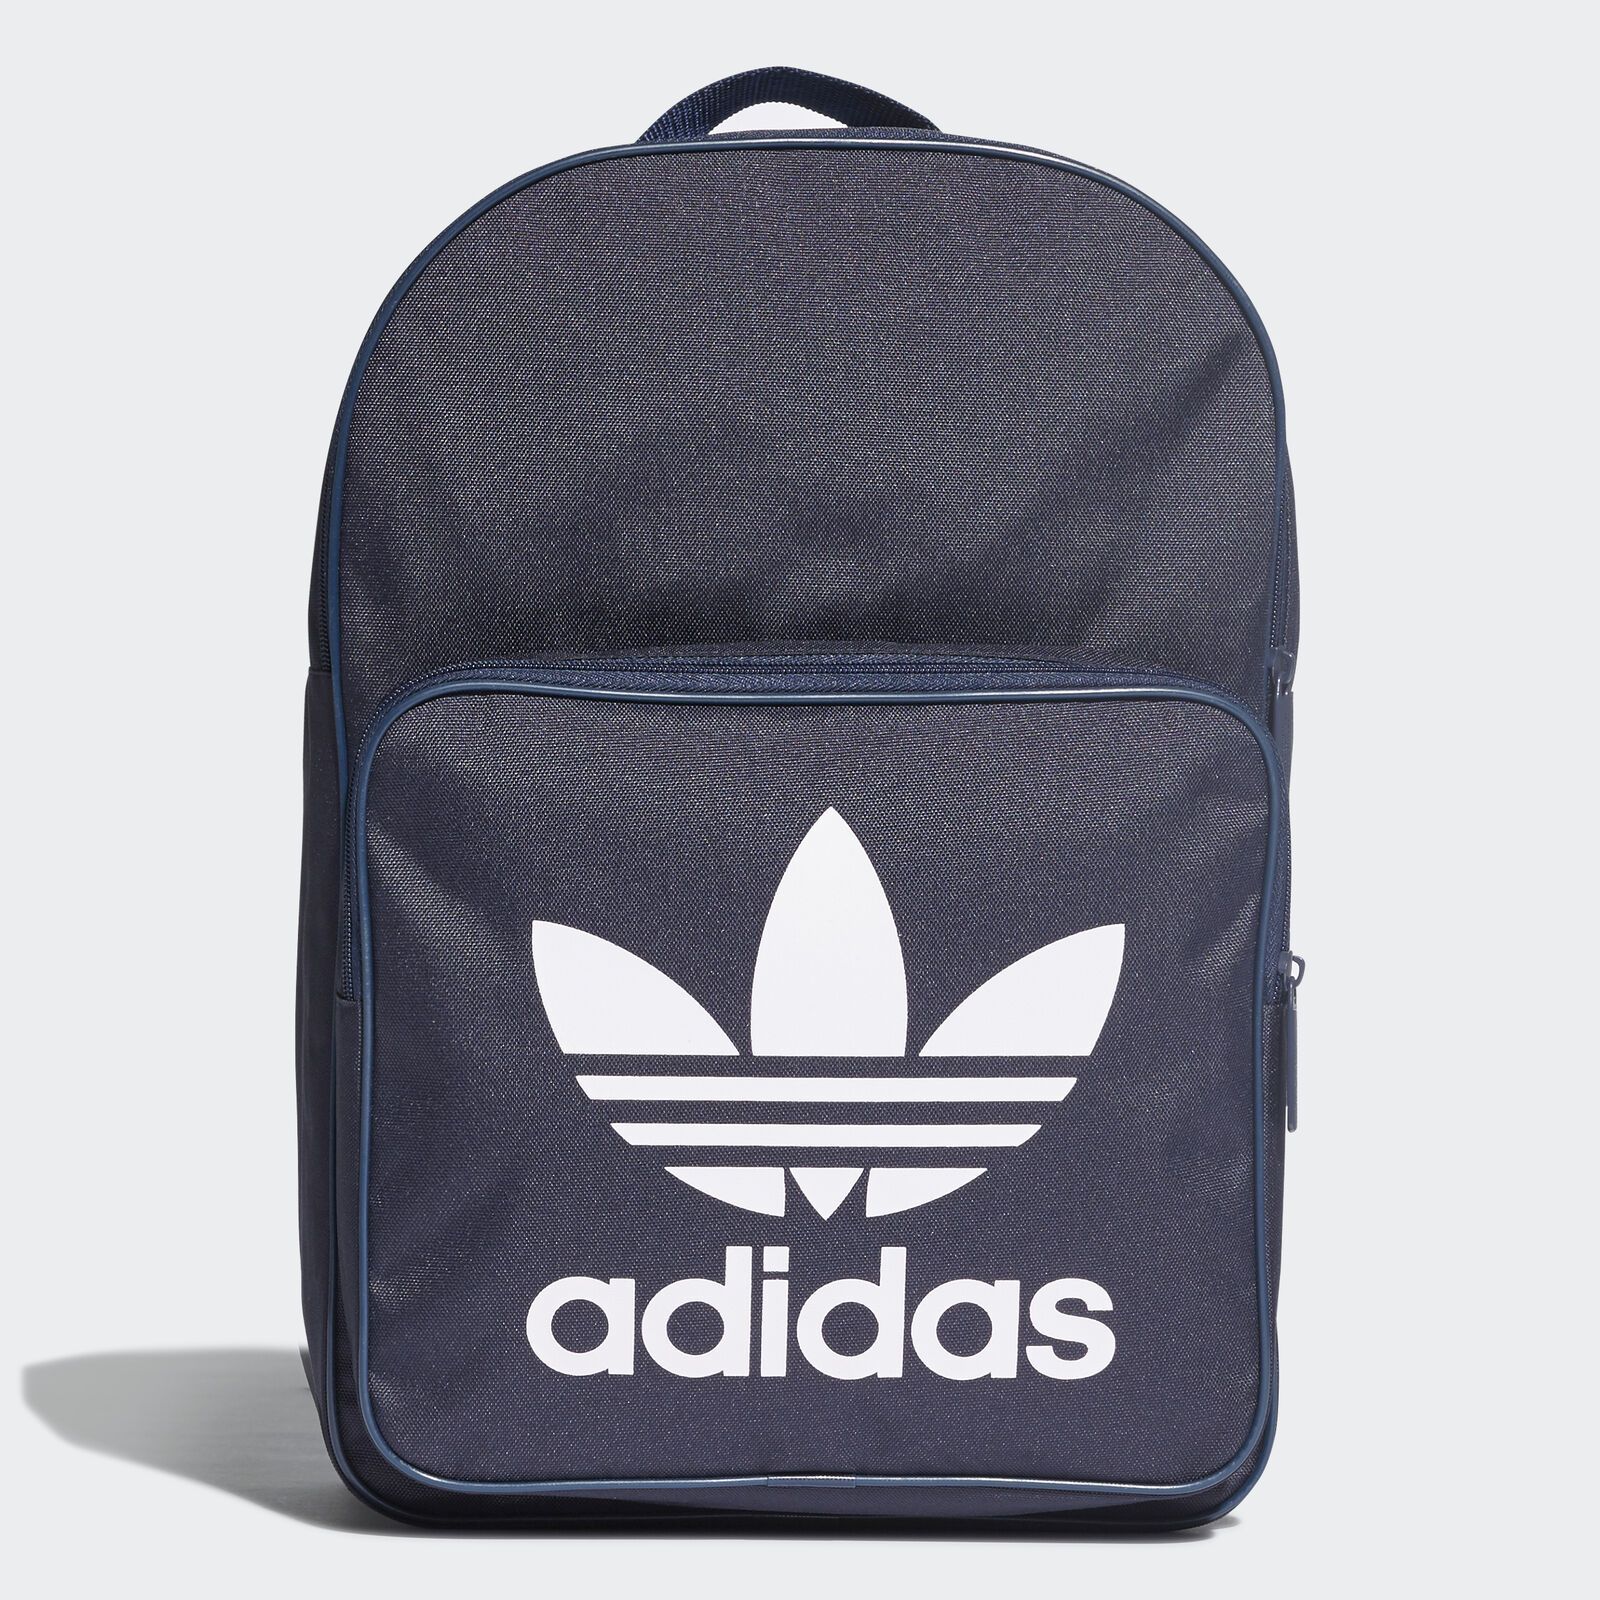 Bild zu Adidas Originals Classic Trefoil Rucksack für 14,95€ (Vergleich: 20,44€)